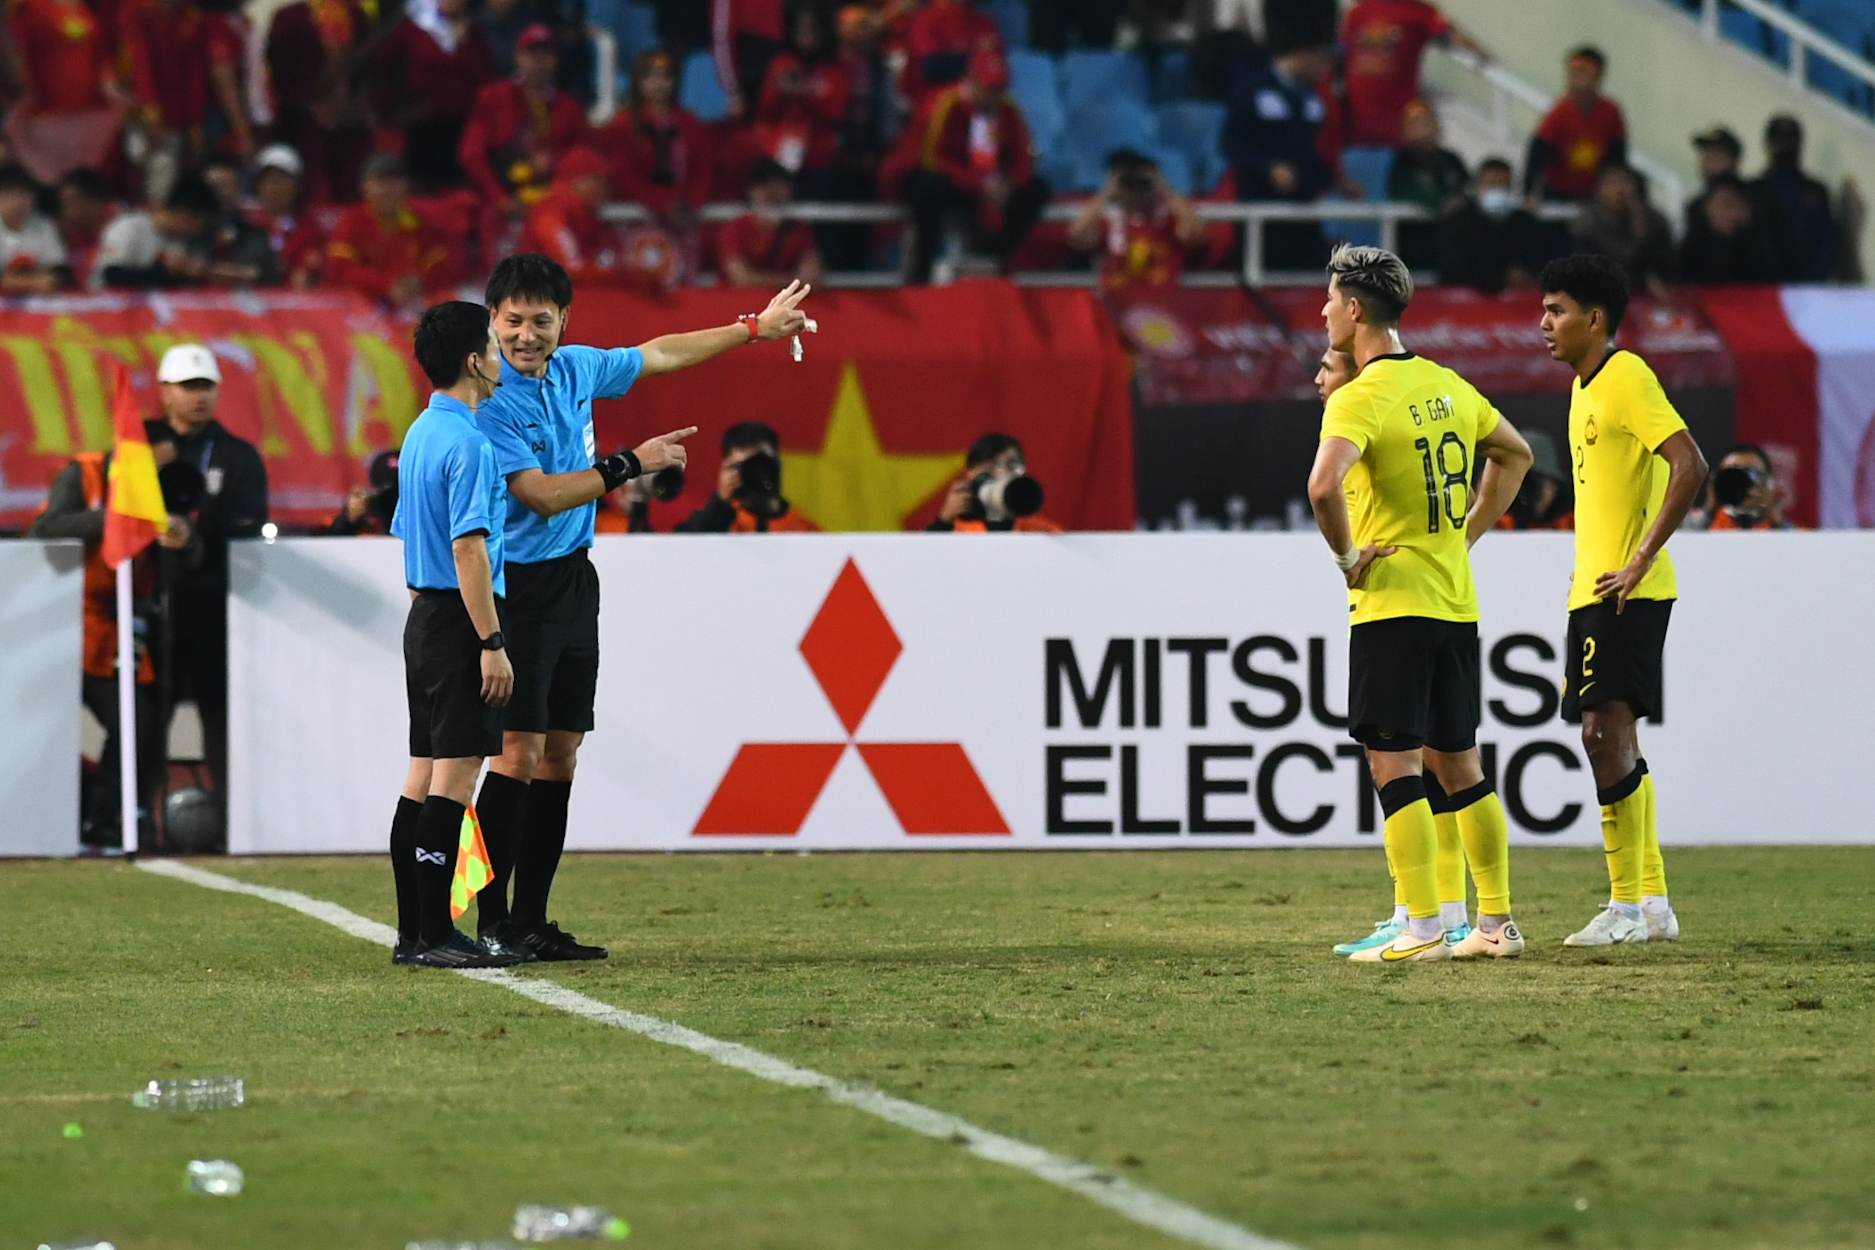 Cầu thủ Malaysia nhận thẻ đỏ vì đánh nguội Văn Hậu ngoài biên - Ảnh 3.